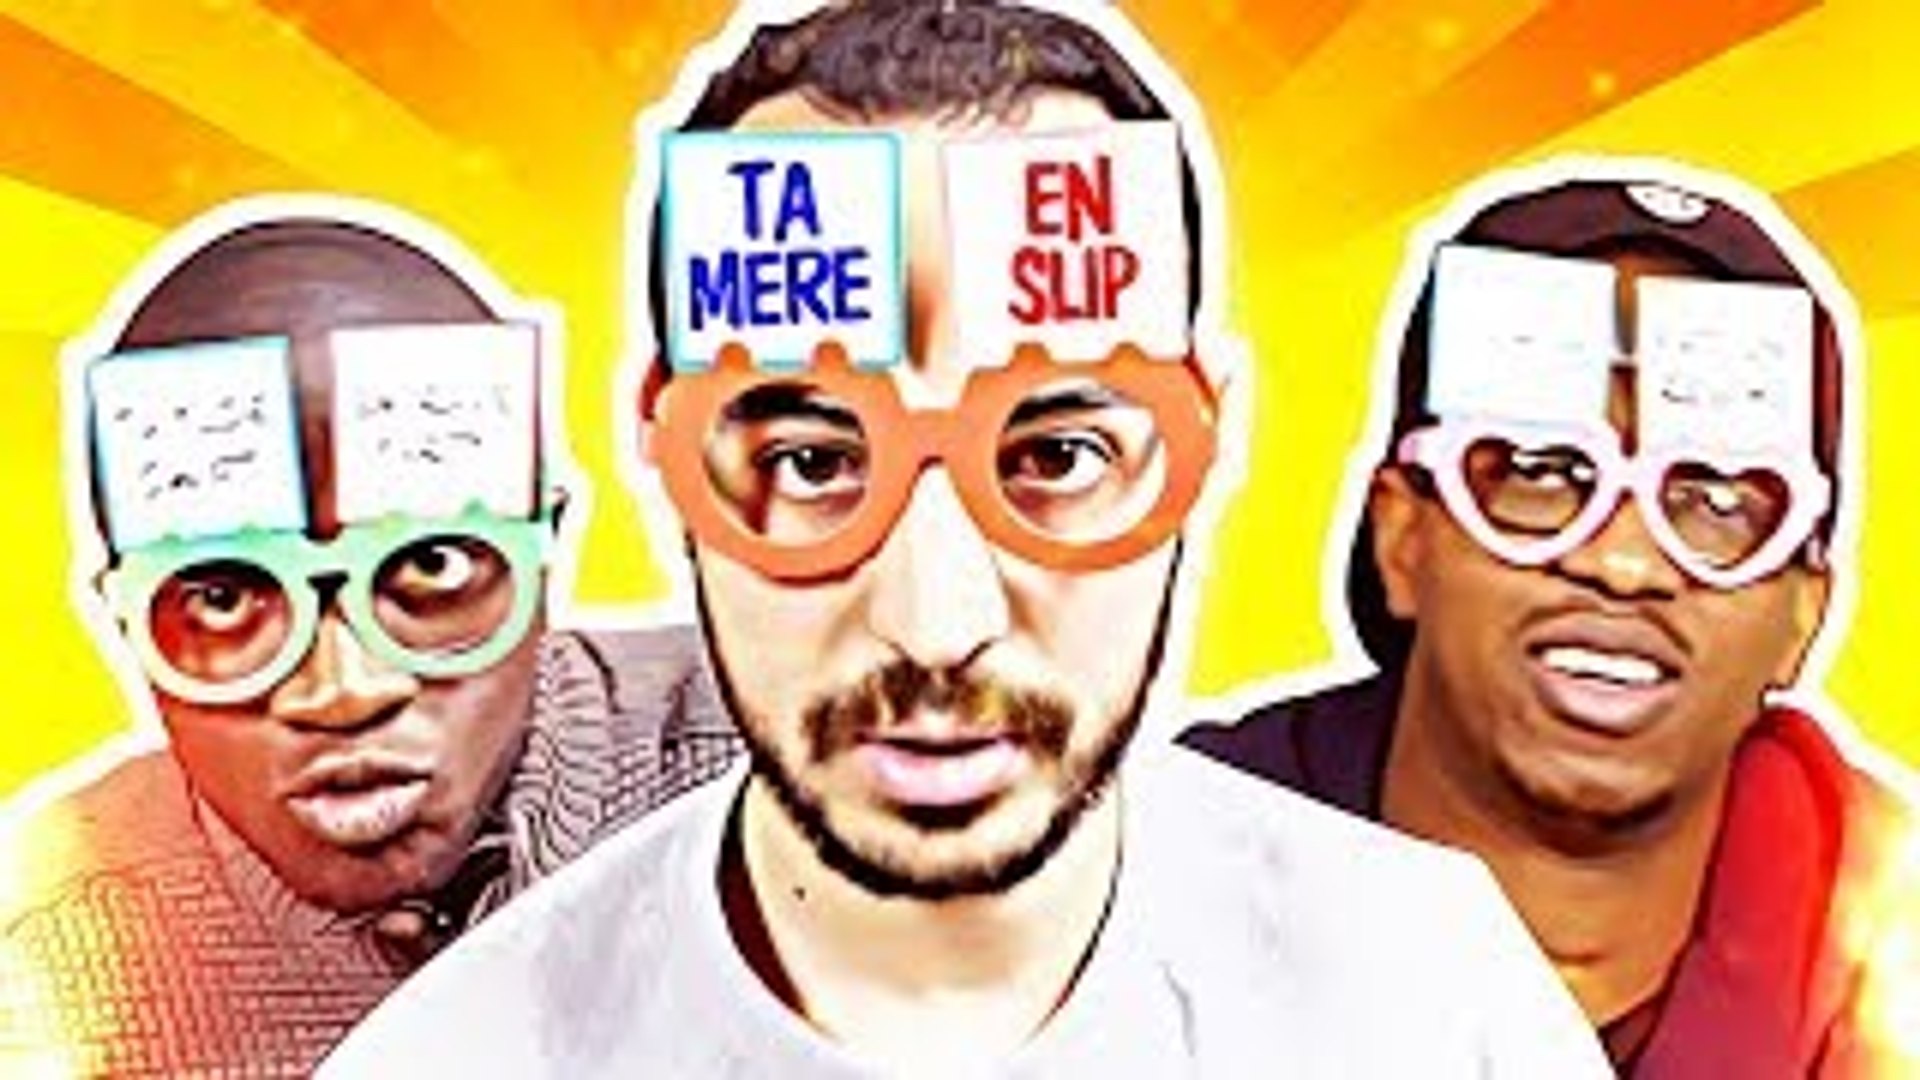 LE BLED'ART-ON JOUE À TA MÈRE EN SLIP ! - Vidéo Dailymotion